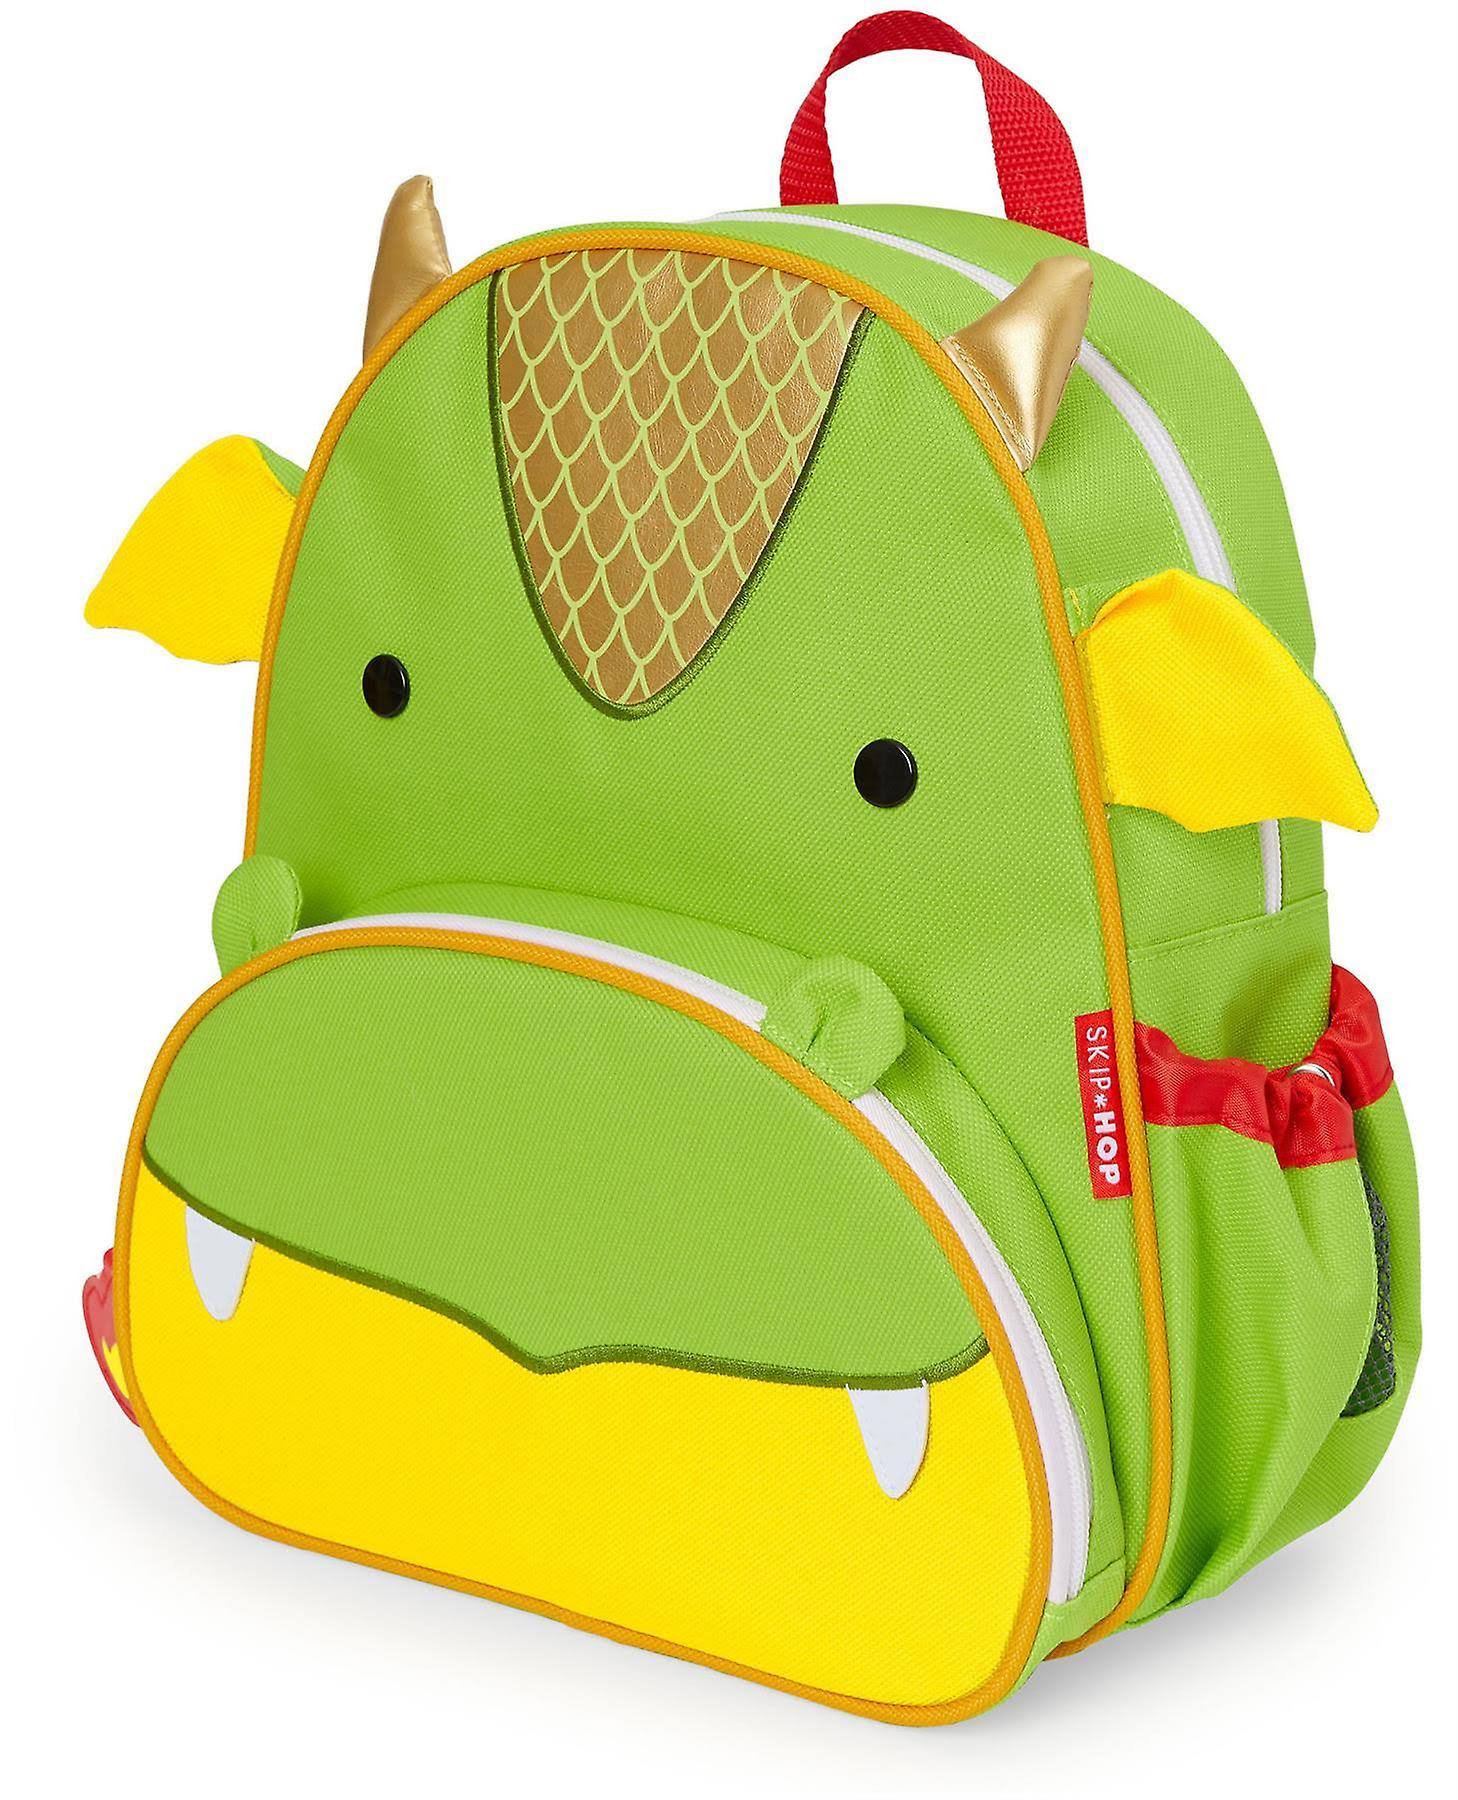 Skip Hop Zoo Backpack Dragon Backpacks